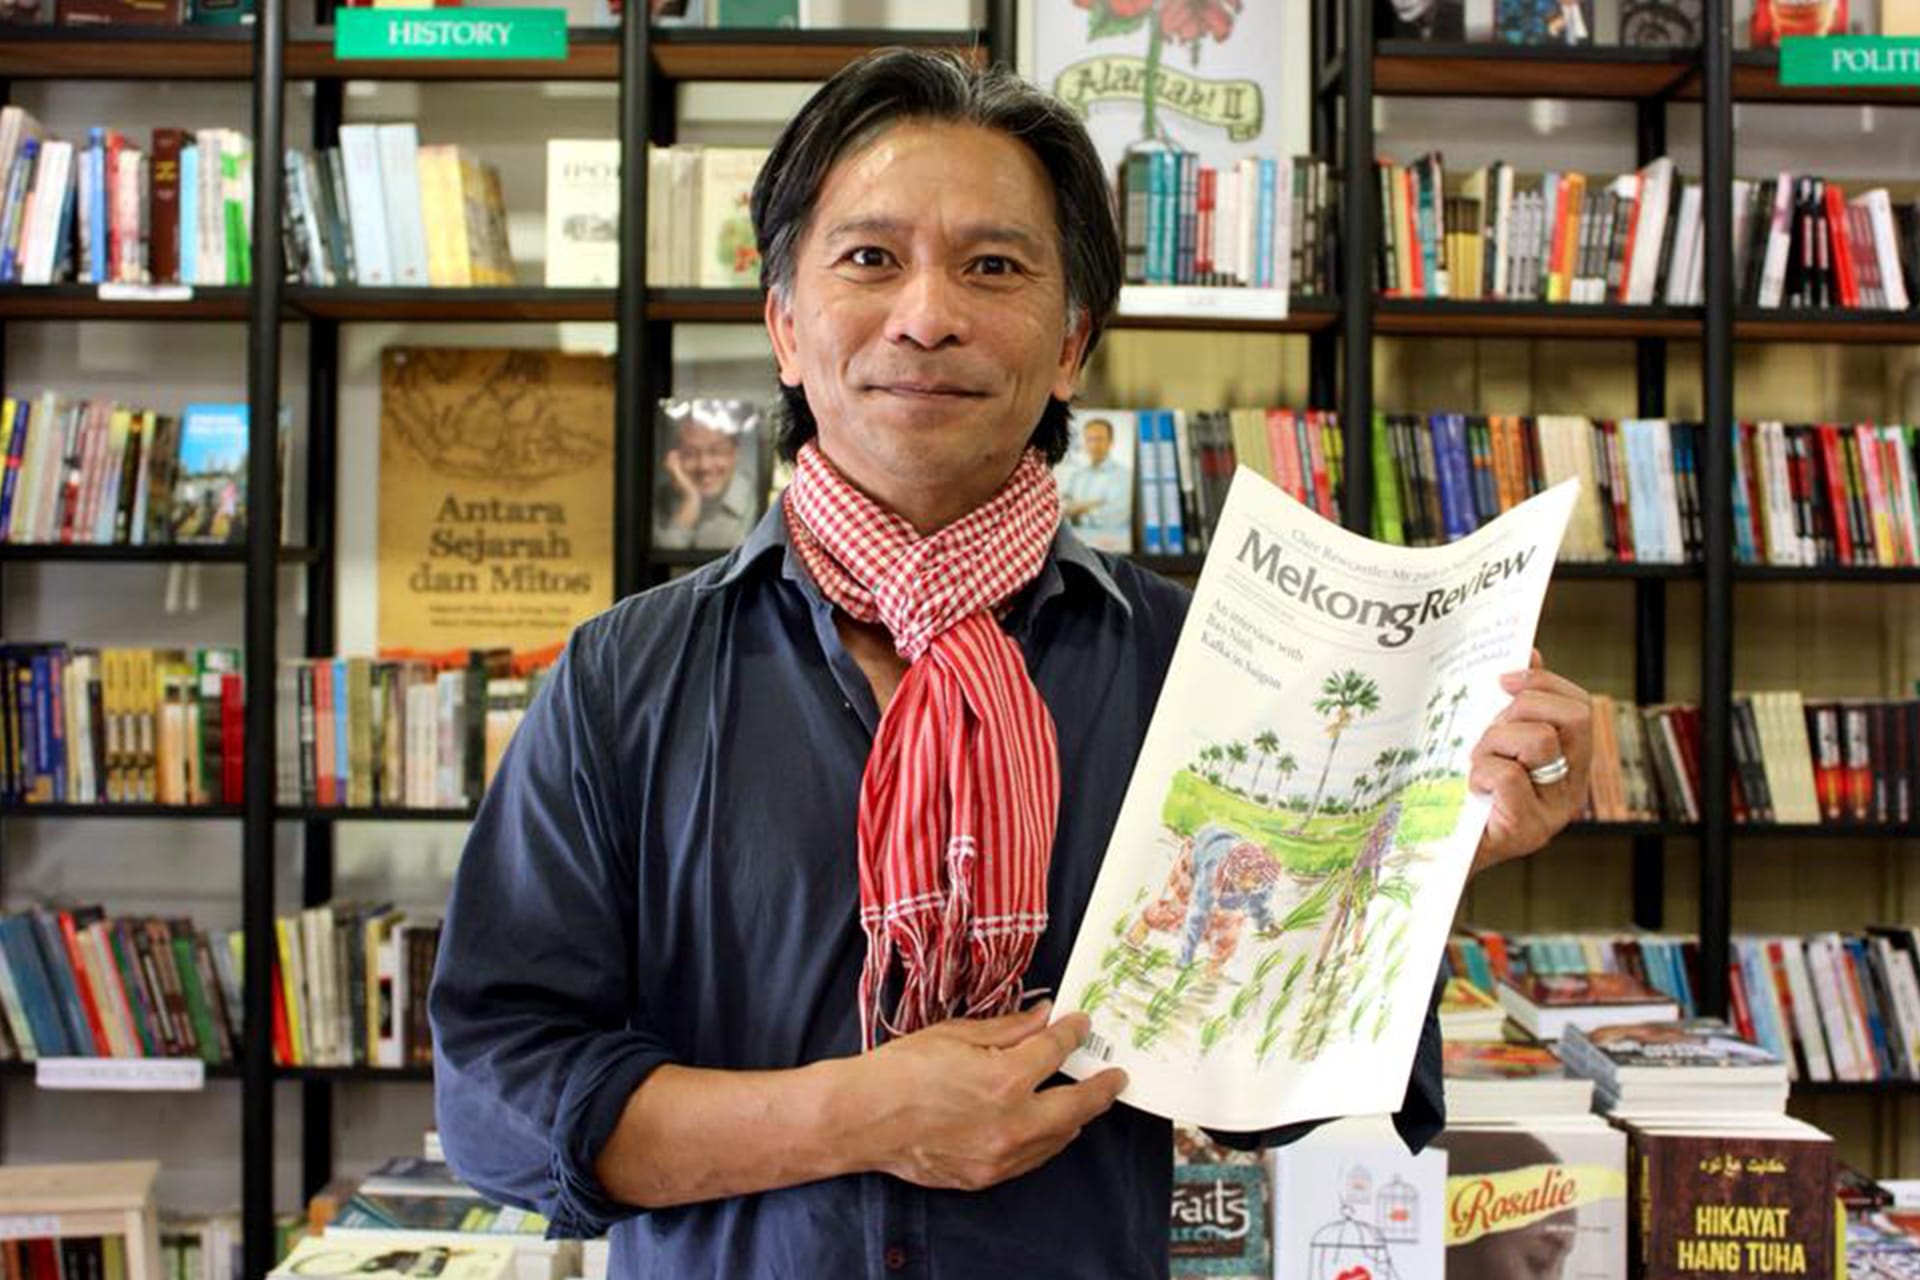 Mekong Review นิตยสารวรรณกรรมเอเชียกับเรื่องราวที่แตกต่างอย่างคล้ายกัน